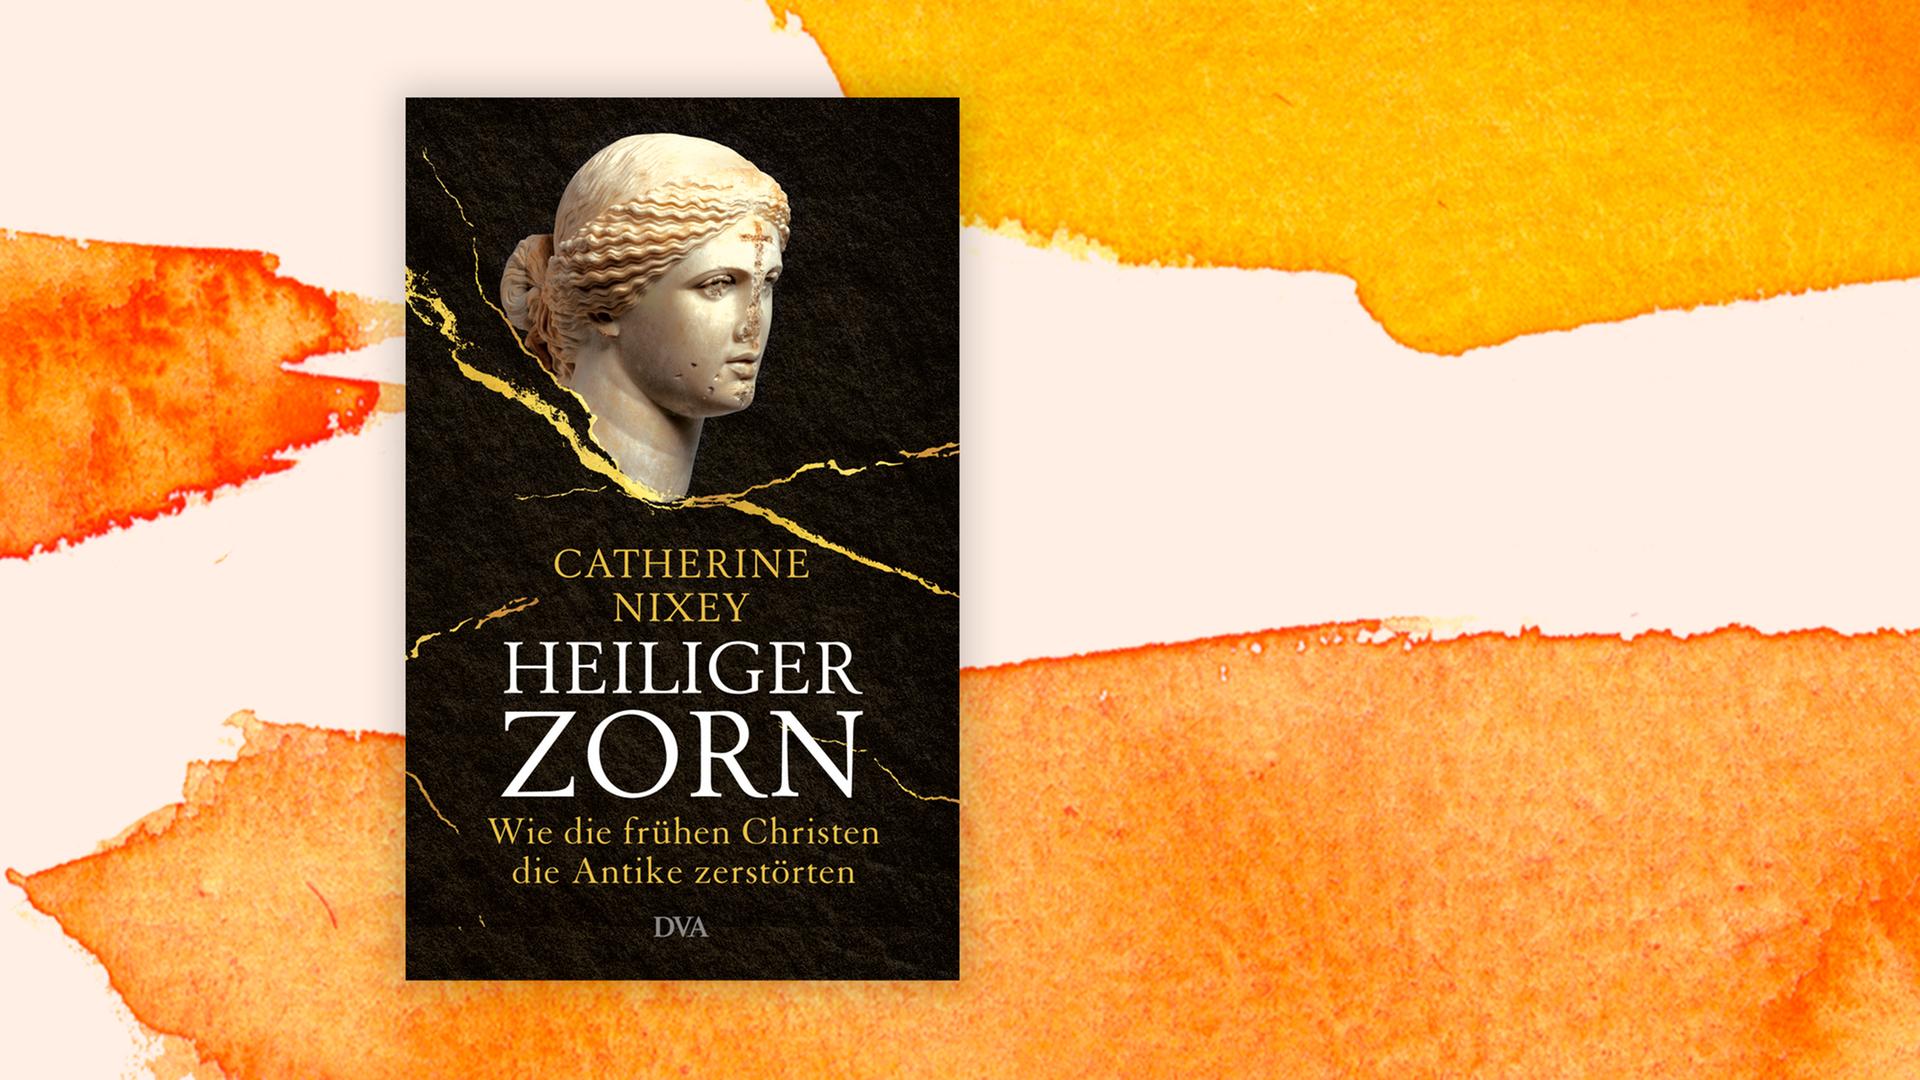 Cover von Catherine Nixeys Buch "Heiliger Zorn. Wie die frühen Christen die Antike zerstörten".